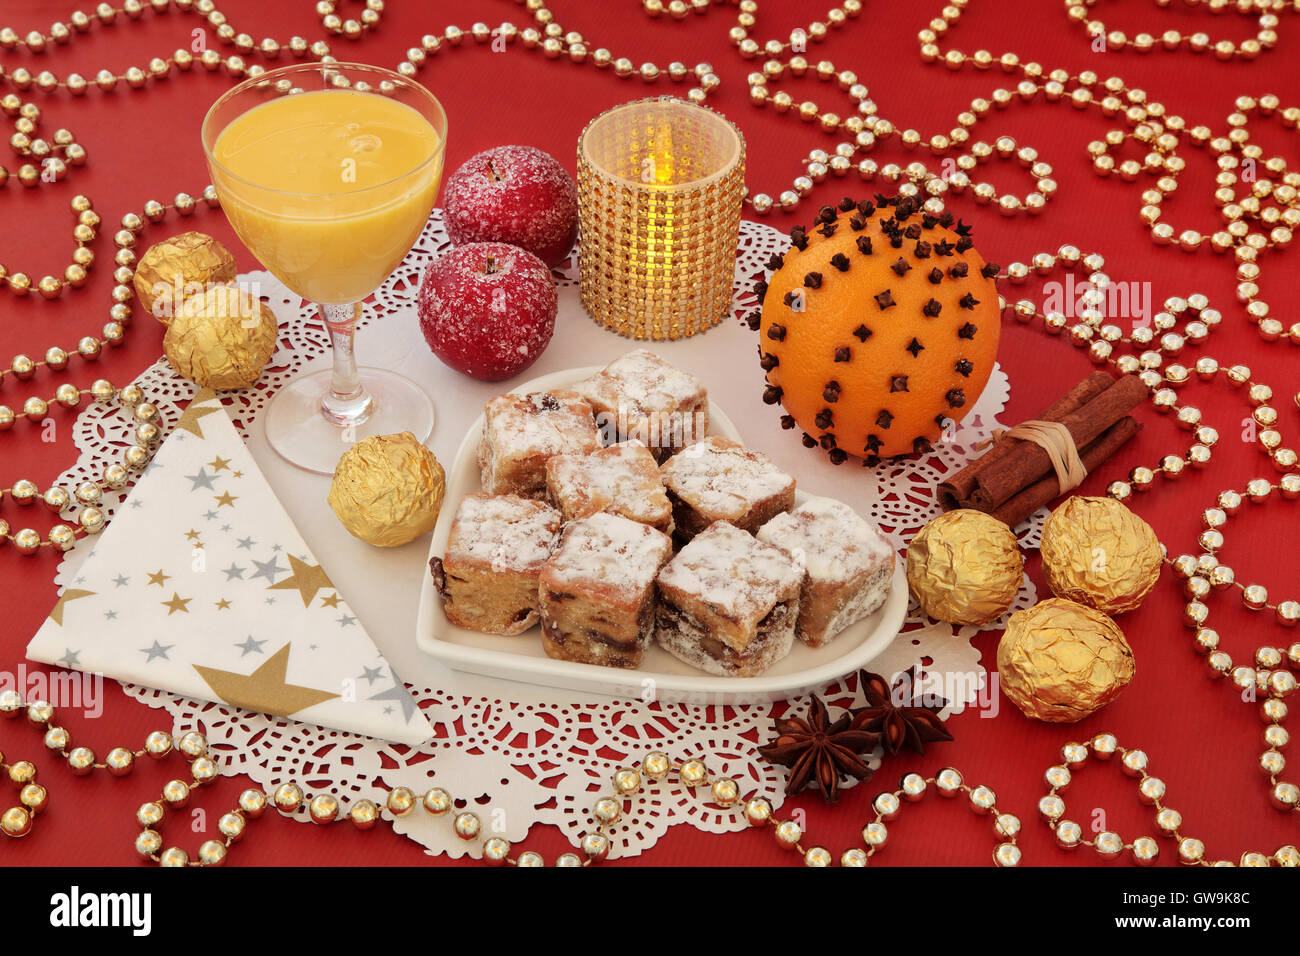 Natale ancora in vita con lo Stollen morde la torta su un cuore piastra sagomata, uovo nog, foglia d'oro di cioccolatini incartati e spezie. Foto Stock